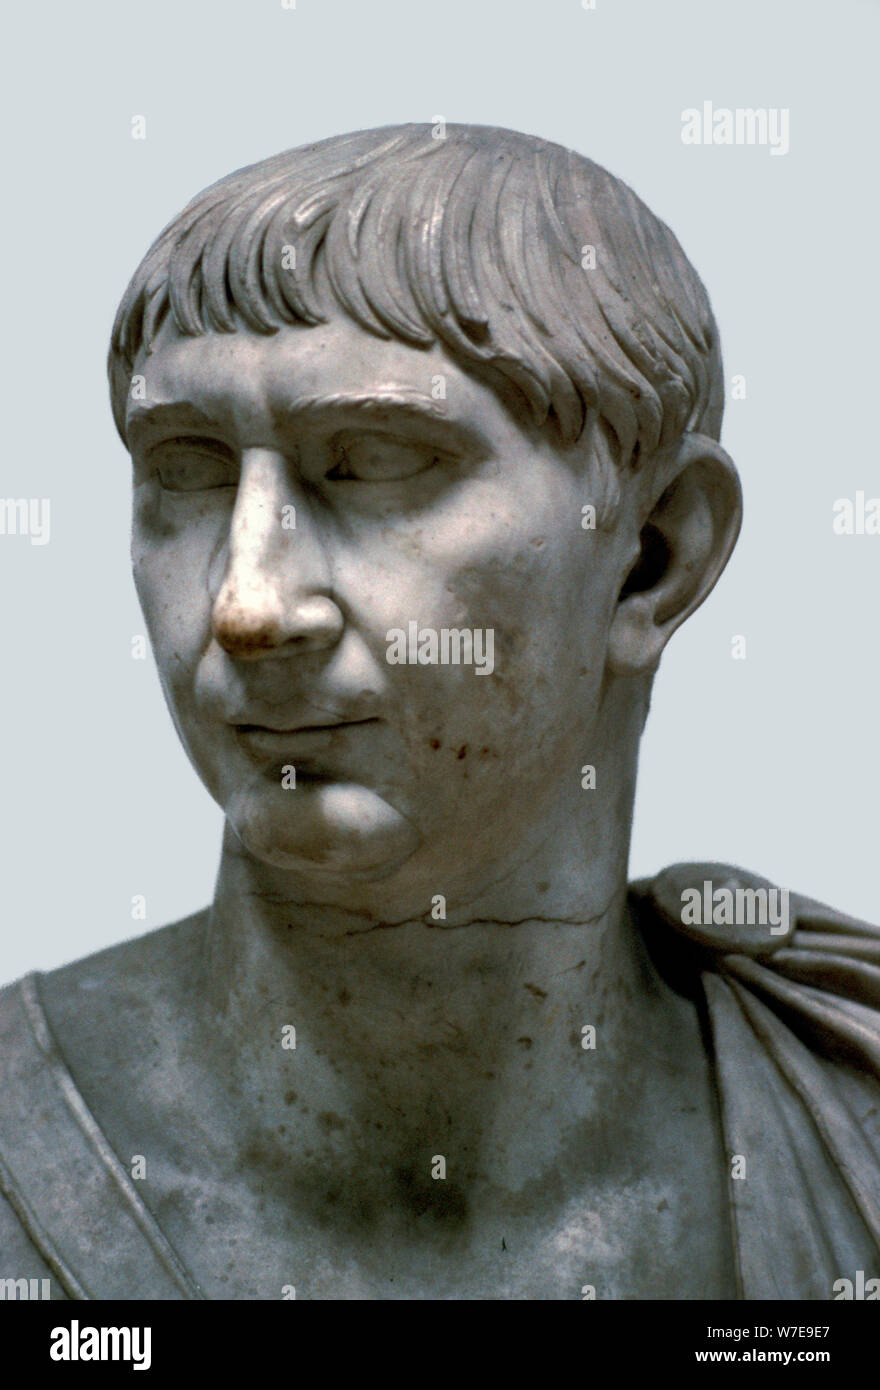 Busto del Emperador Trajano, siglo primero. Artista: Desconocido Foto de stock